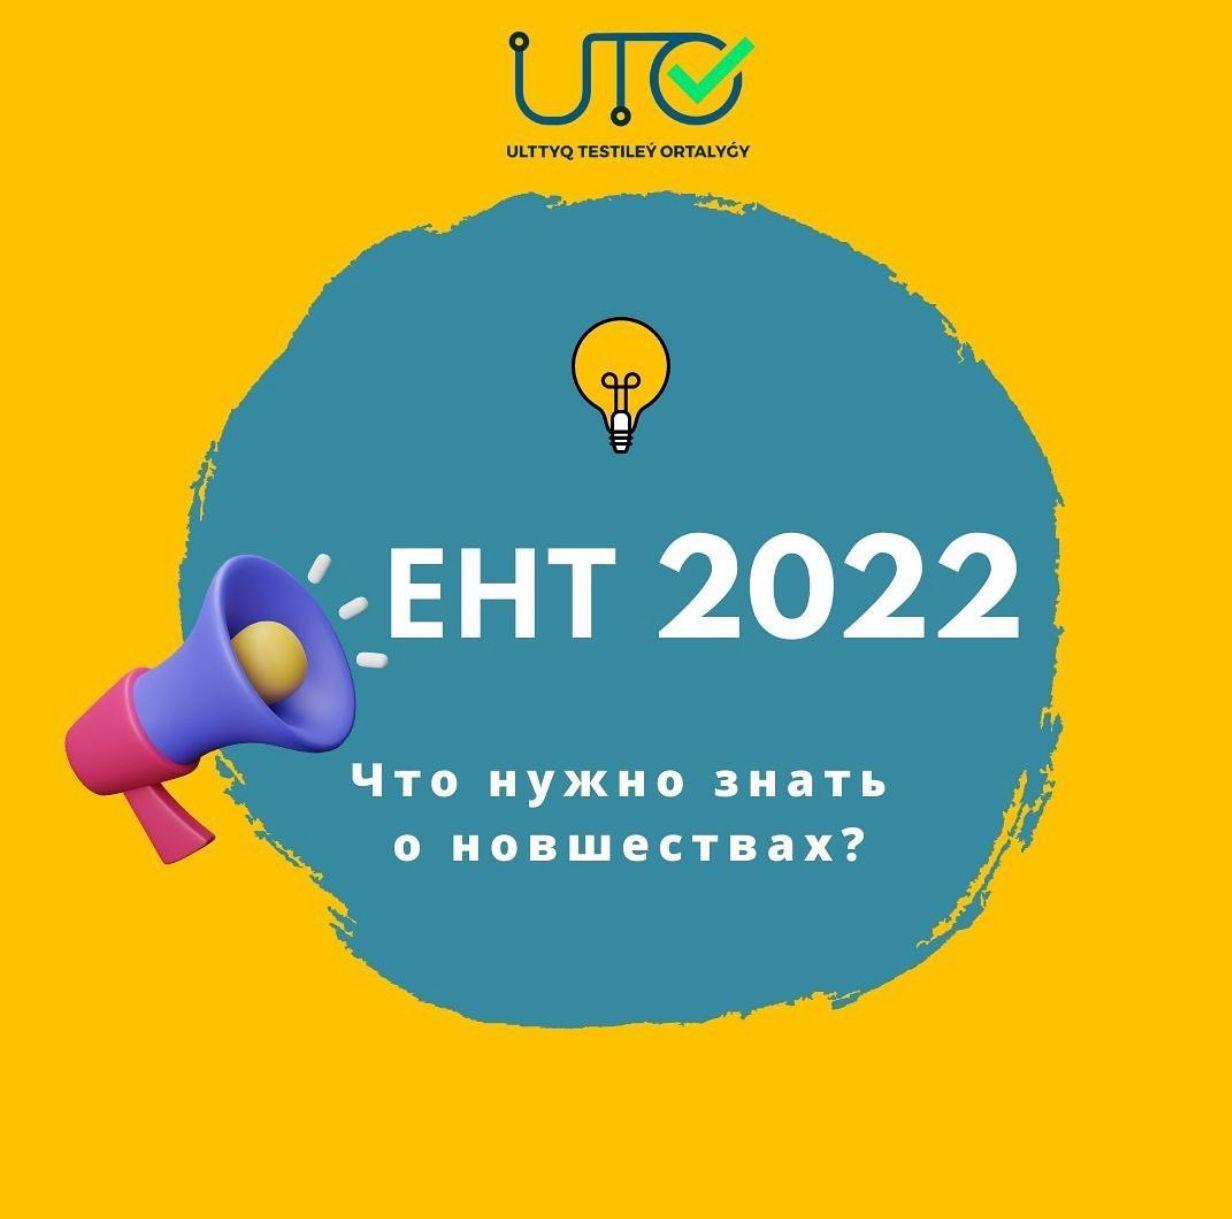 ЕНТ - 2022. Основные изменения